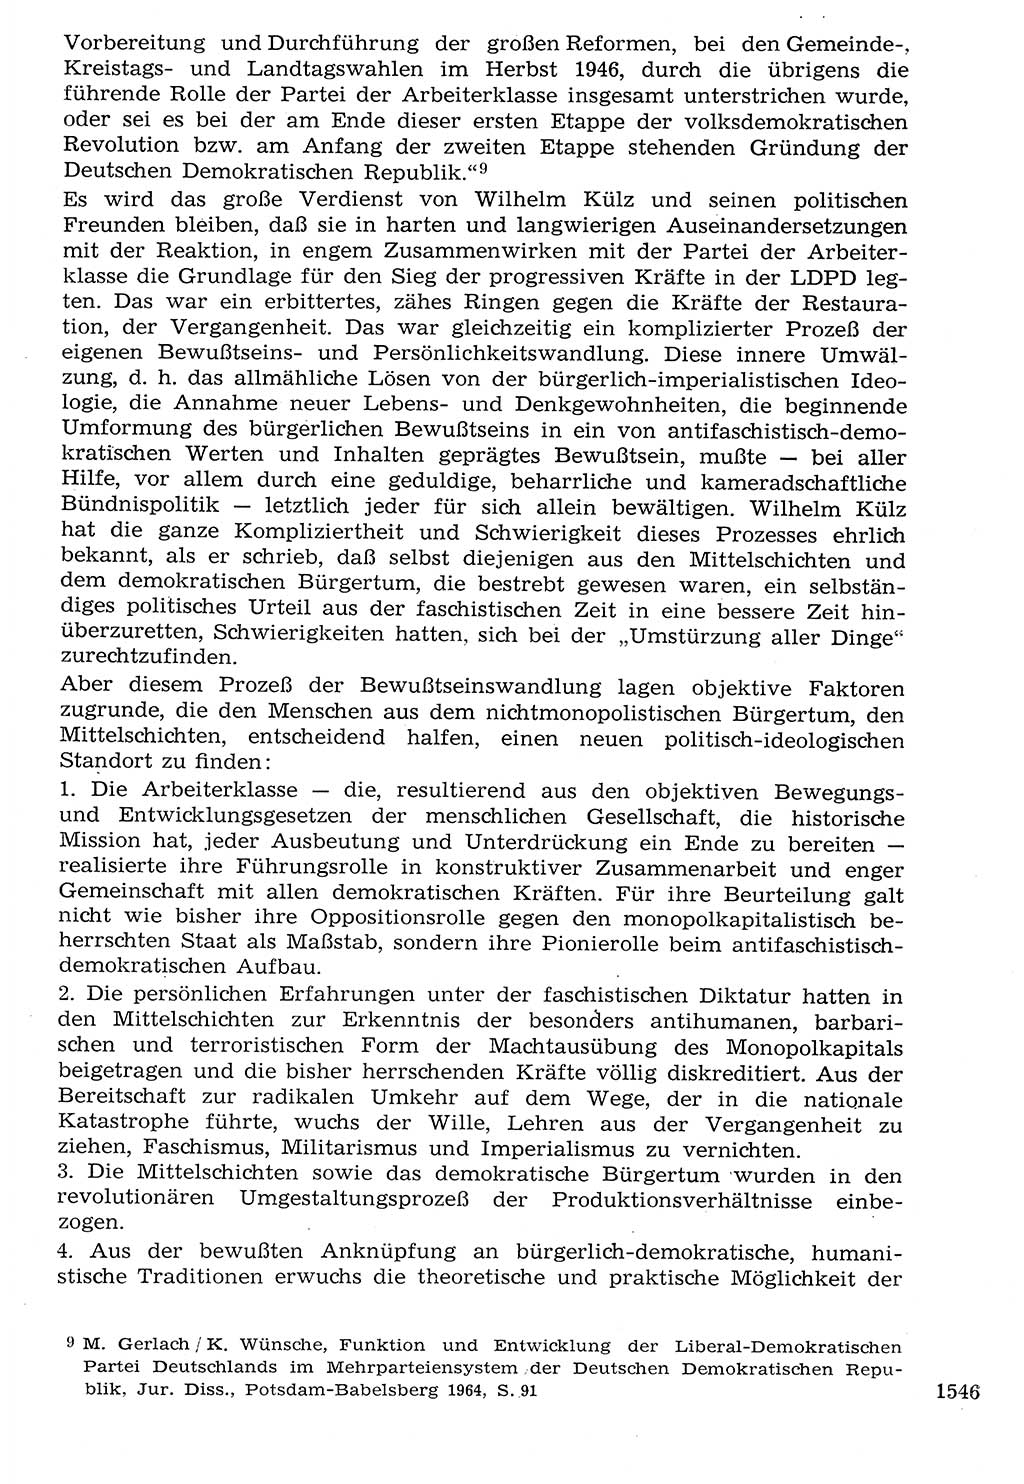 Staat und Recht (StuR), 17. Jahrgang [Deutsche Demokratische Republik (DDR)] 1968, Seite 1546 (StuR DDR 1968, S. 1546)